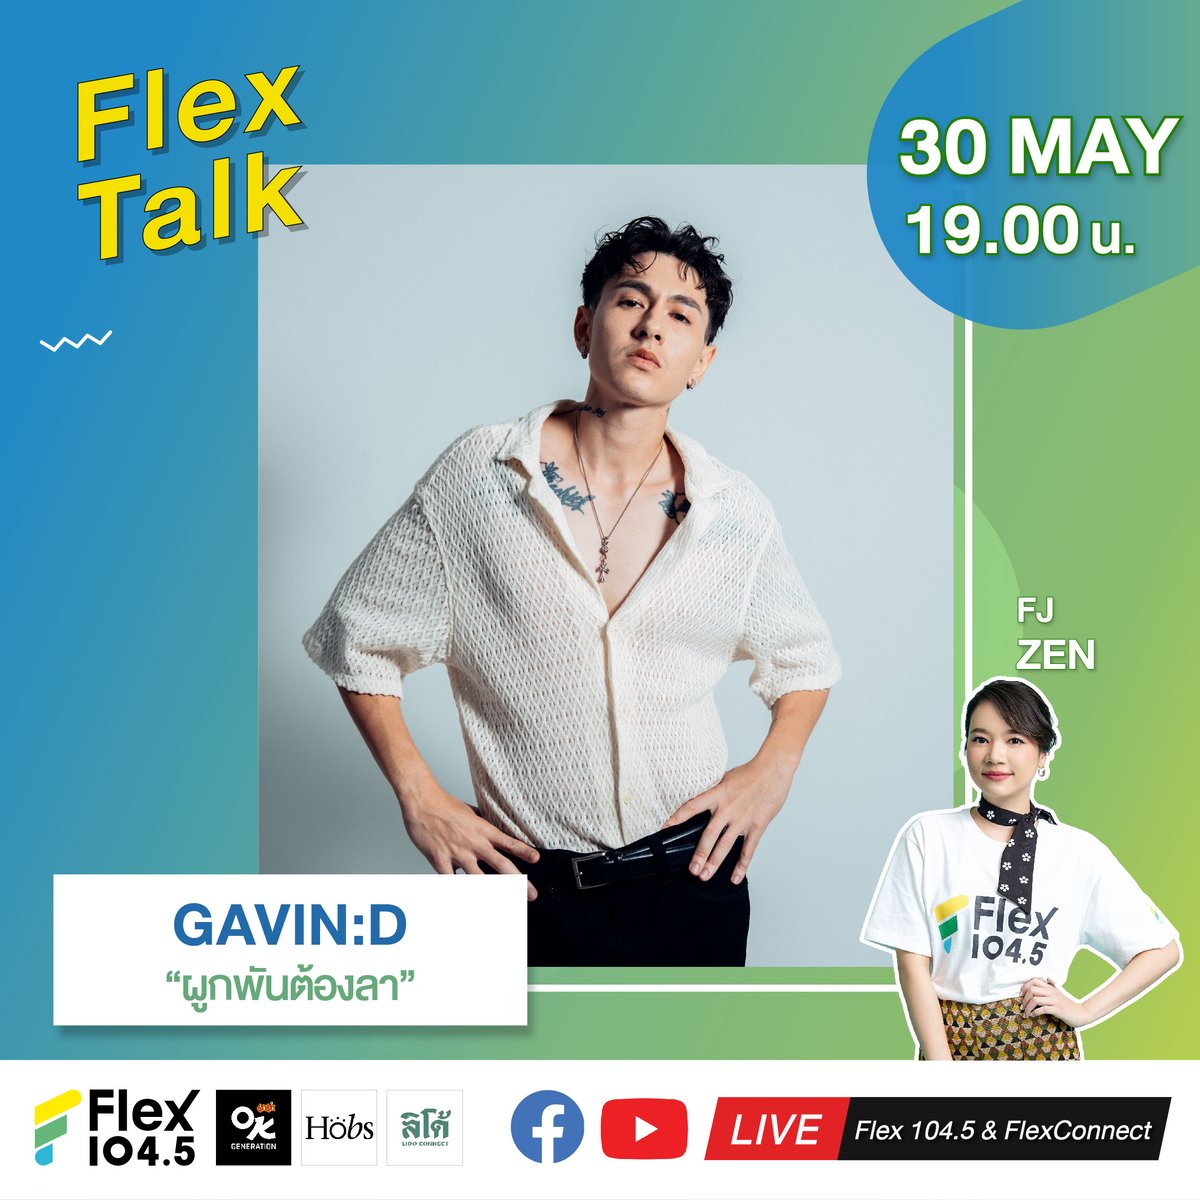 ถ้าเหลือแค่ความผูกพัน…แล้วต้องลาจริงหรอ? แต่ถ้าไม่อยากลา ก็ต้องเจอกับ GAVIN:D พร้อมกับเพลงใหม่ล่าสุด “ผูกพันต้องลา” เจอกันได้ในรายการ Flex Talk วันพฤหัสที่ 30 พฤษภาคมนี้ เวลา 19.00 น. ทาง 🎧 คลื่น Flex 104.5 🔴 LIVE ที่ Facebook และ Youtube FlexConnect .